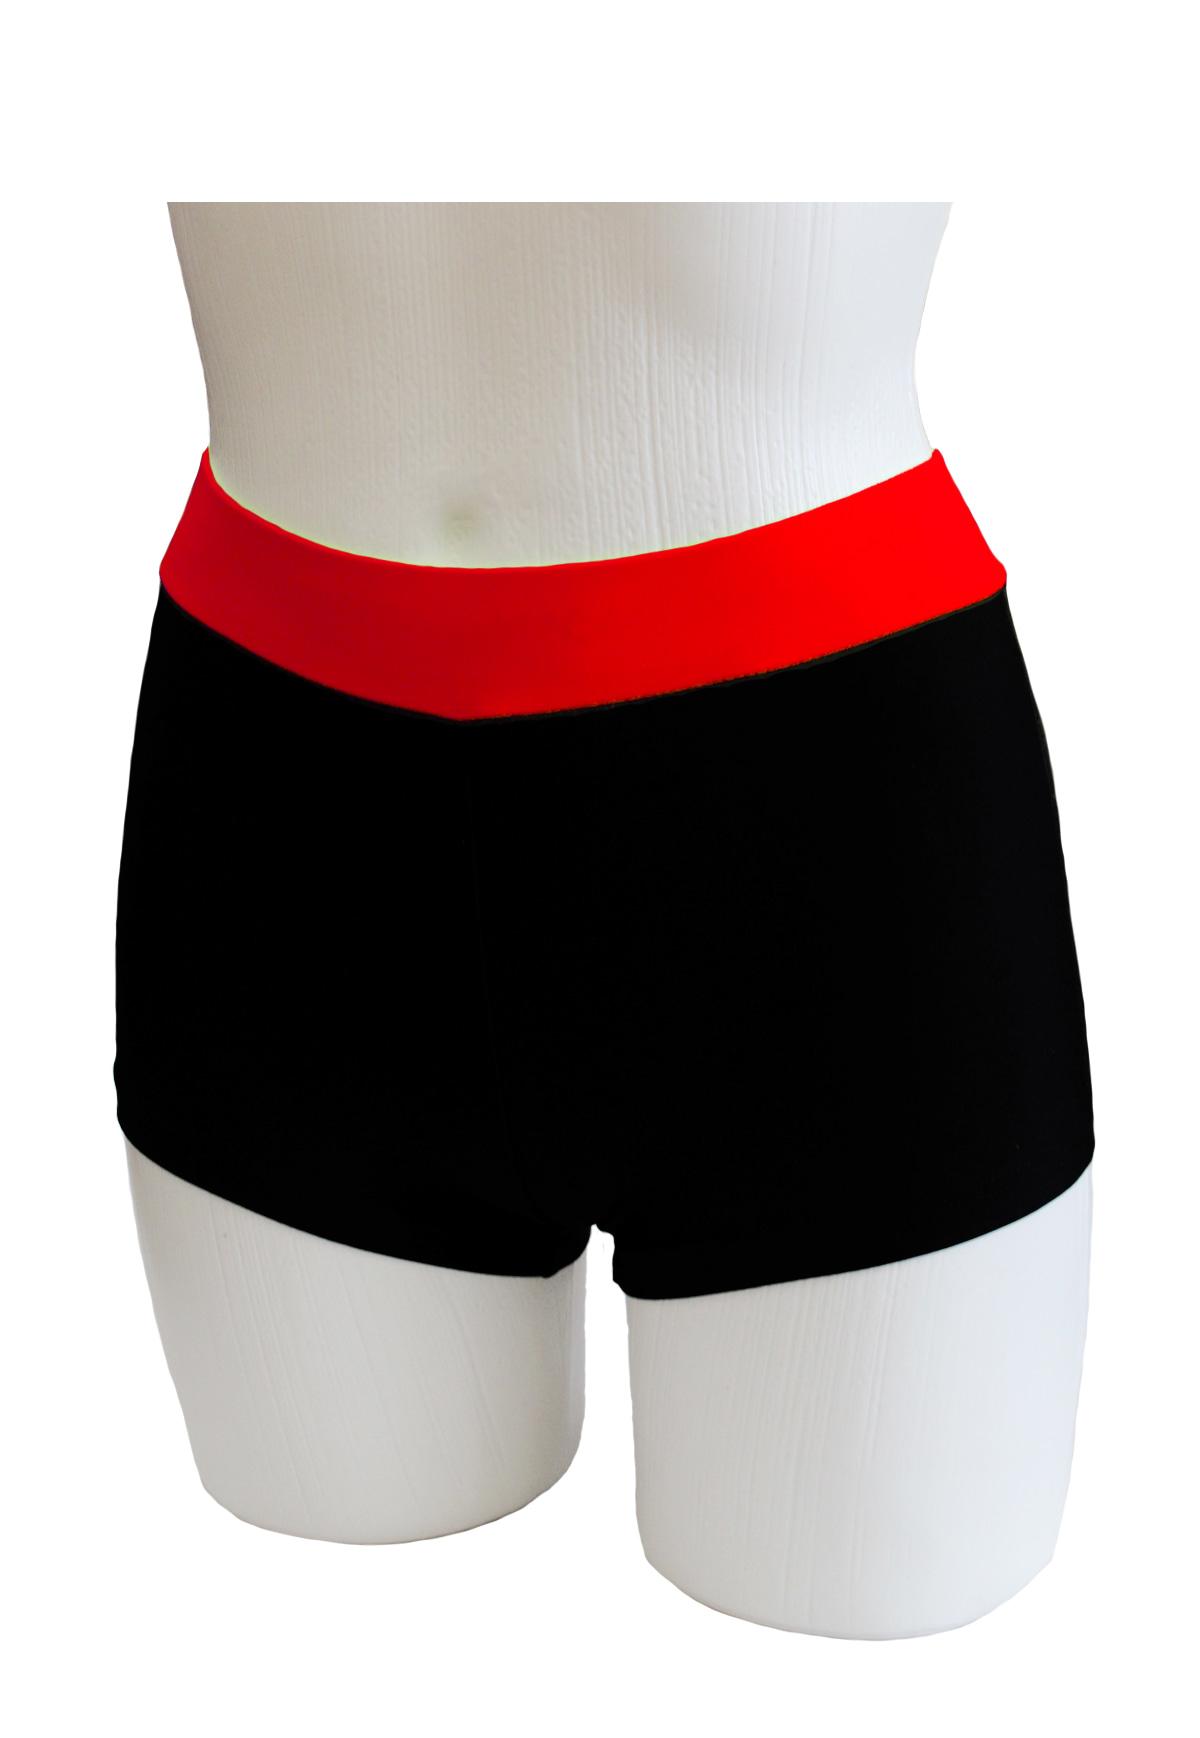 Шорты женские для спортивной гимнастики GK Sport ШКМ3.1 черные с красным поясом